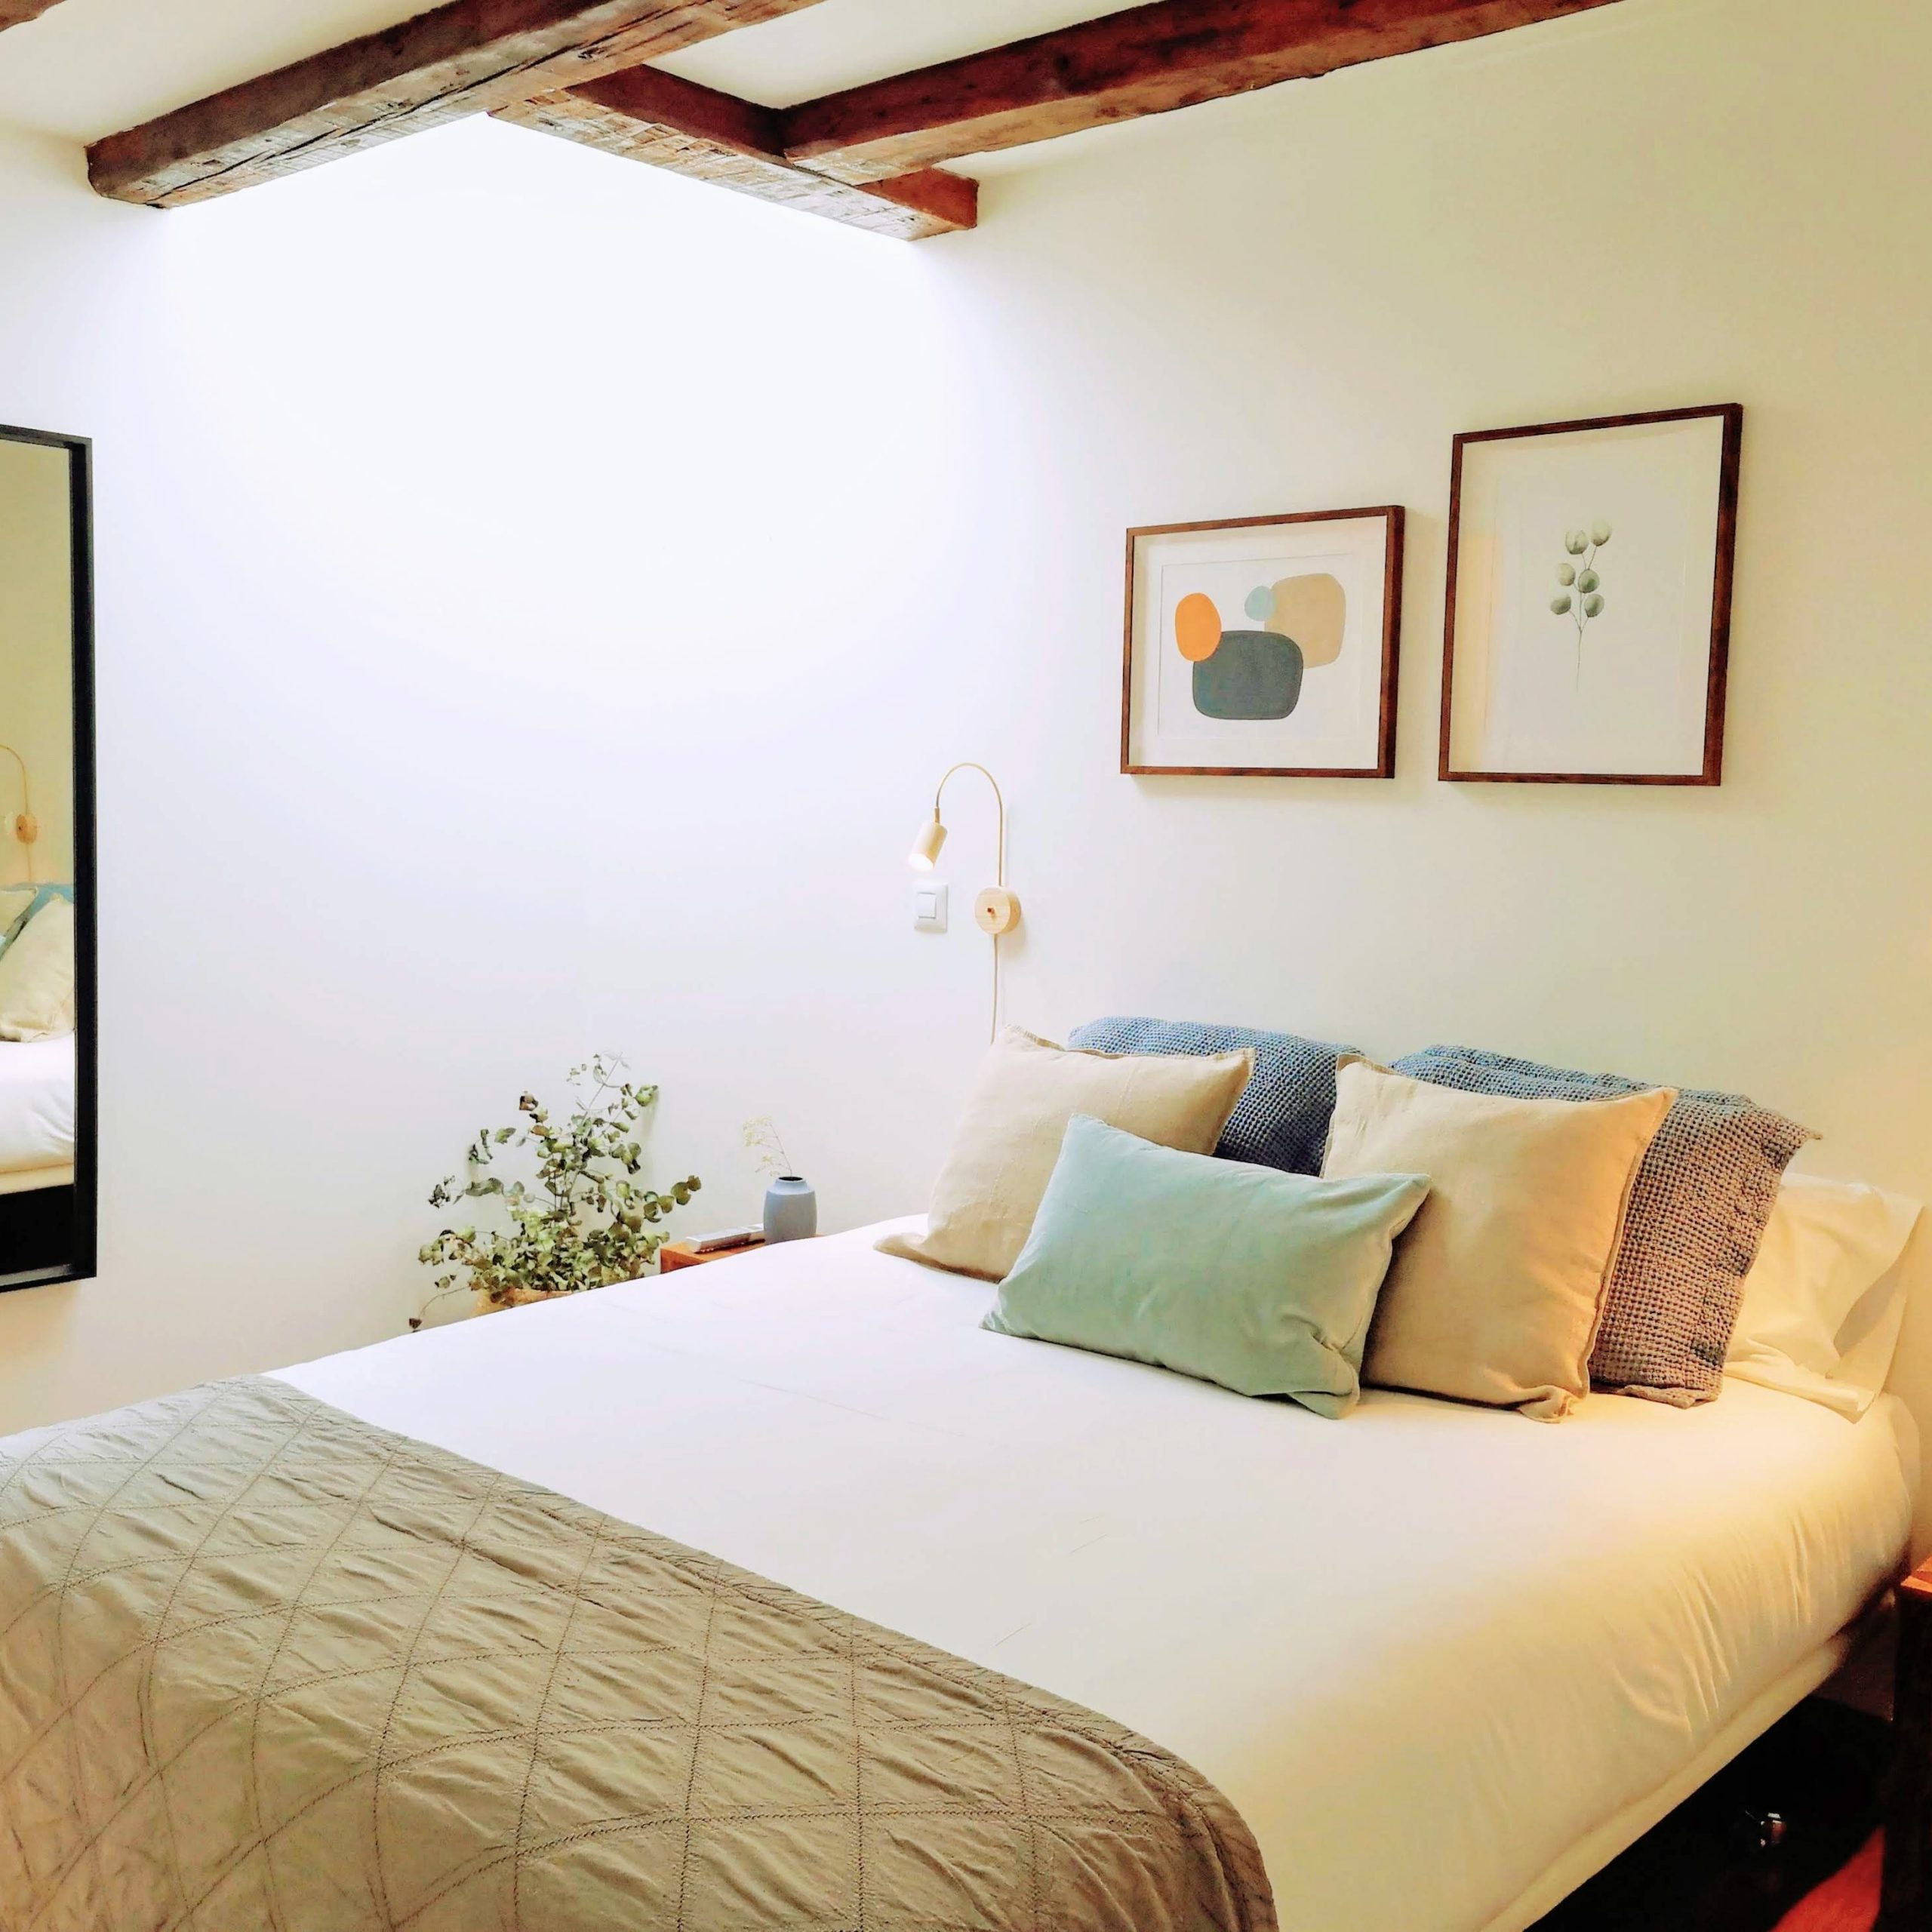 Precioso apartamento para expats en Madrid